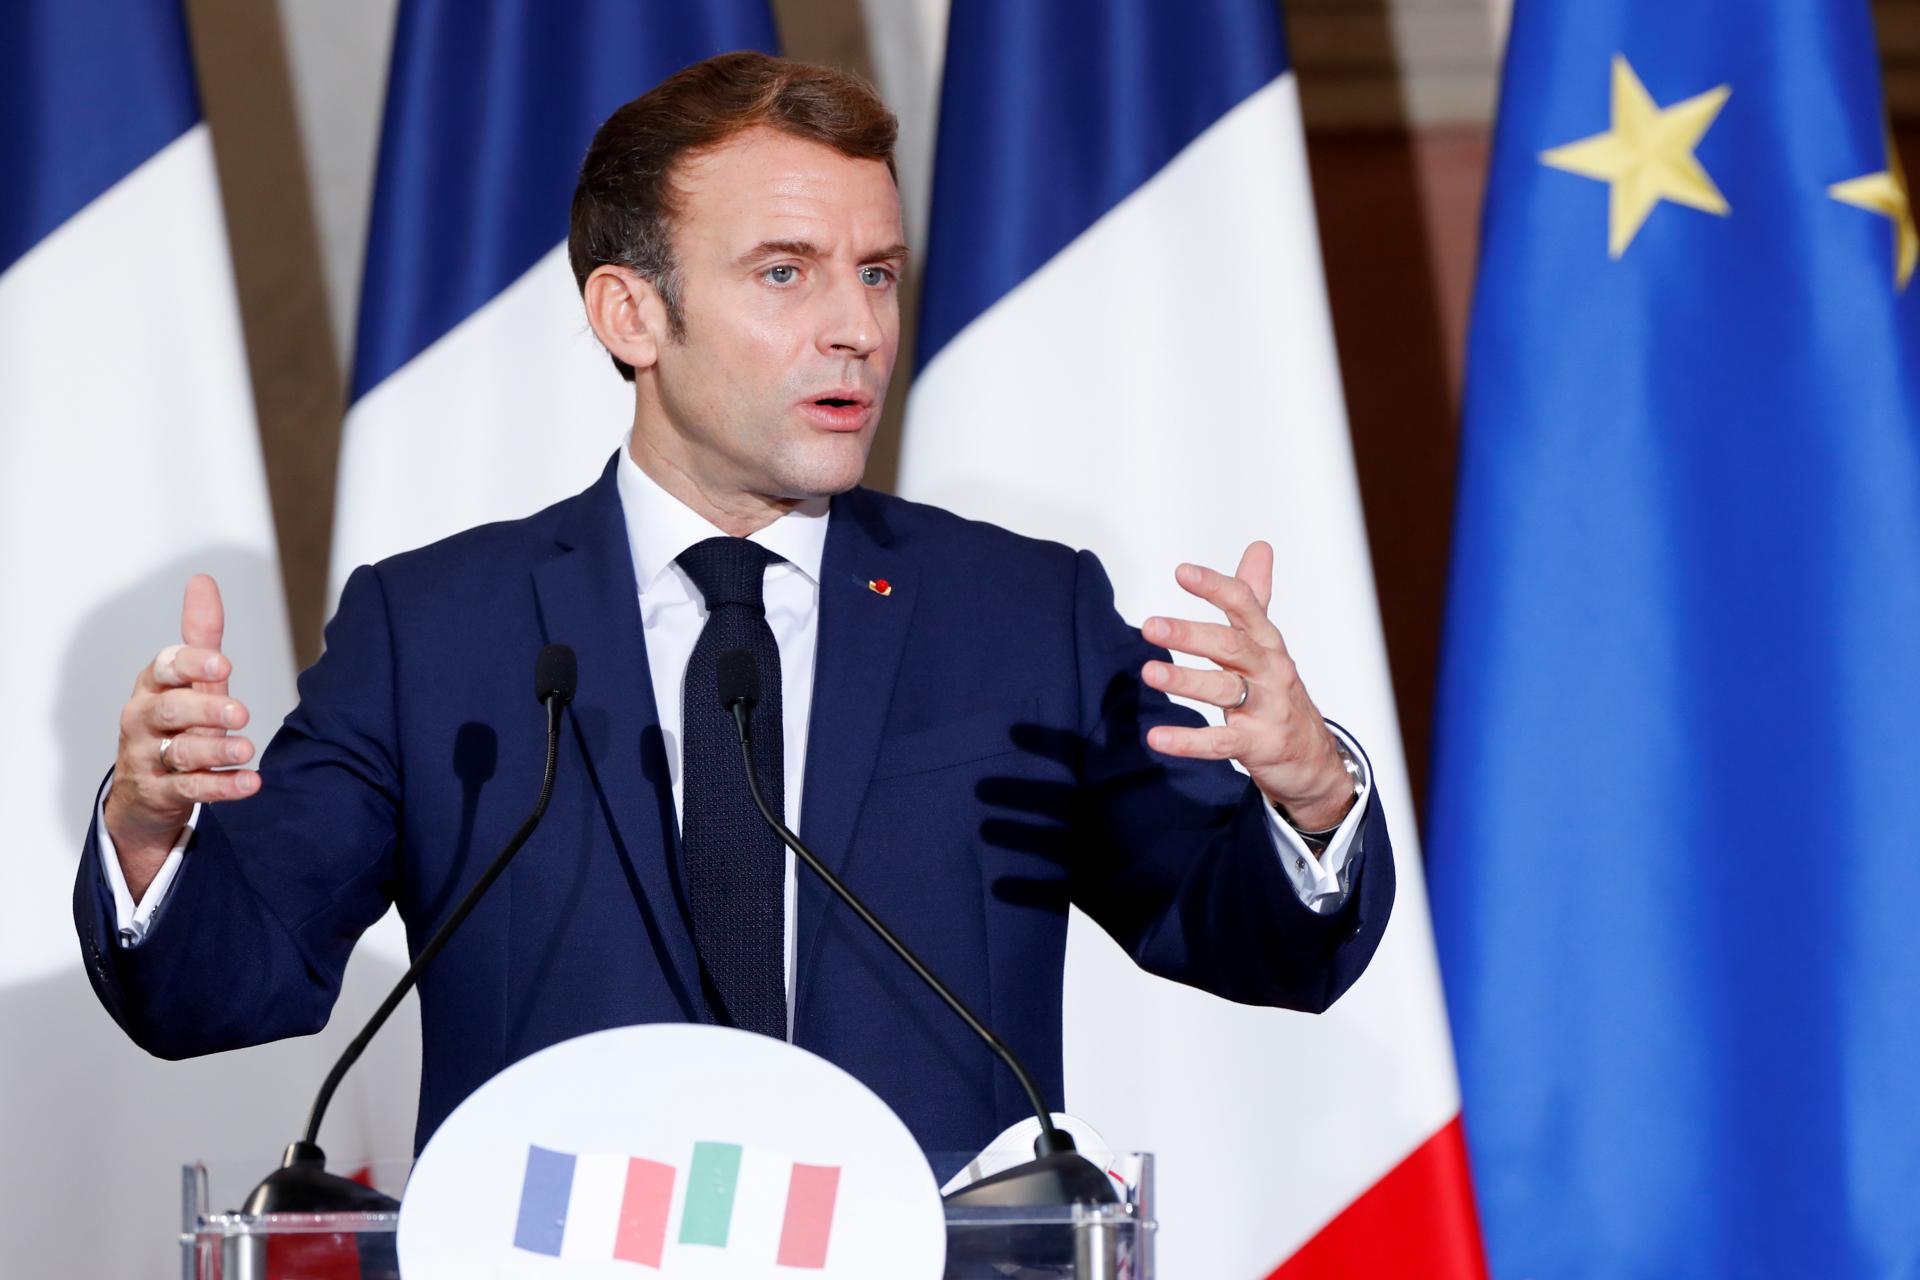 Francë - Një qytetar bën kallëzim penal kundër Presidentit Macron